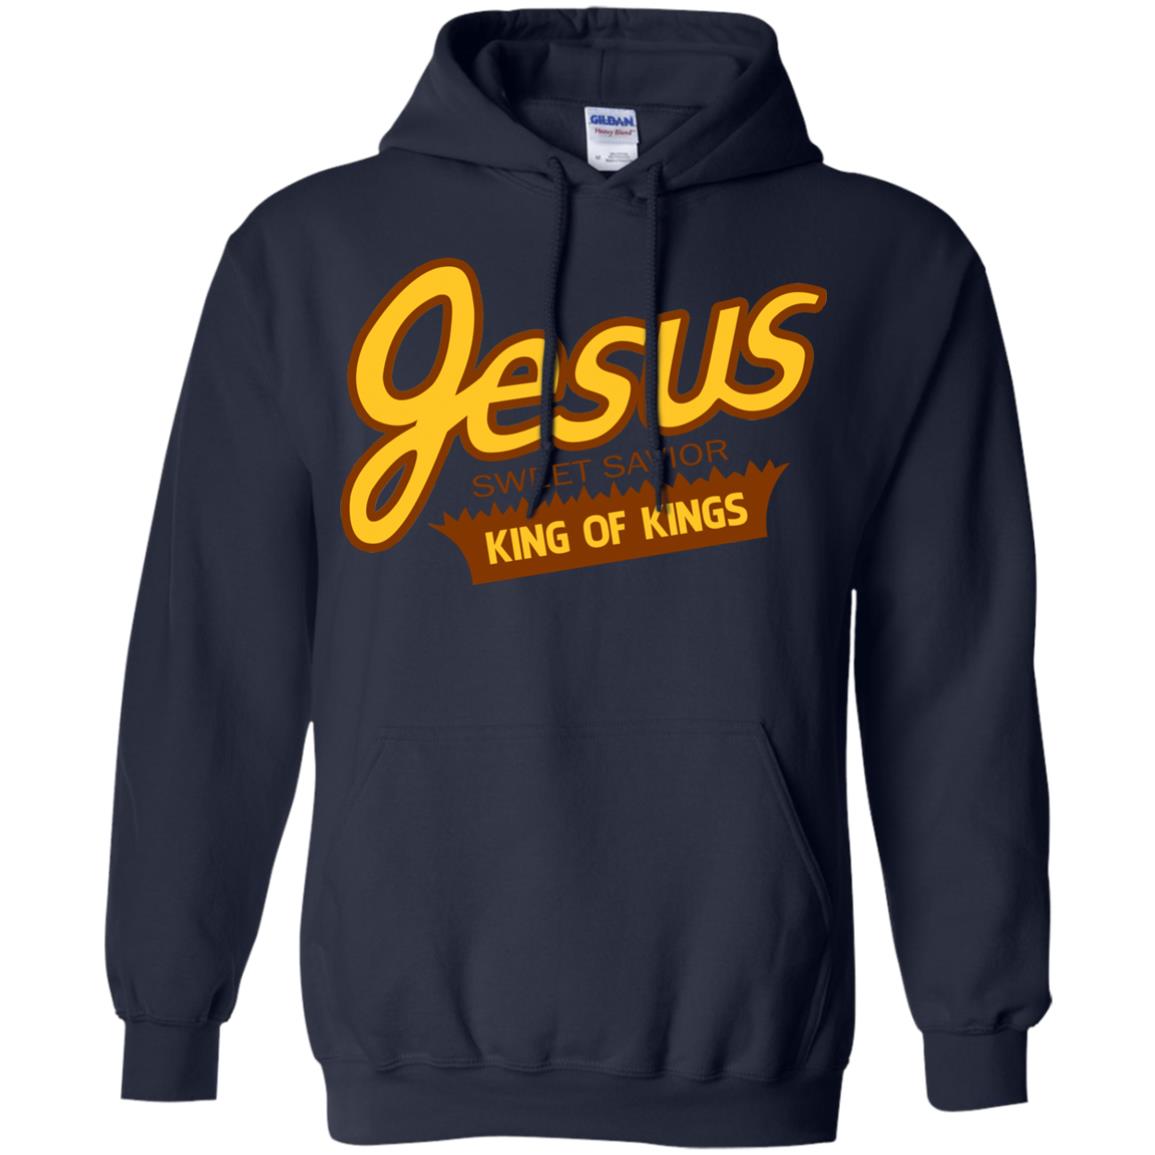 jesus reeses hoodie - navy blue